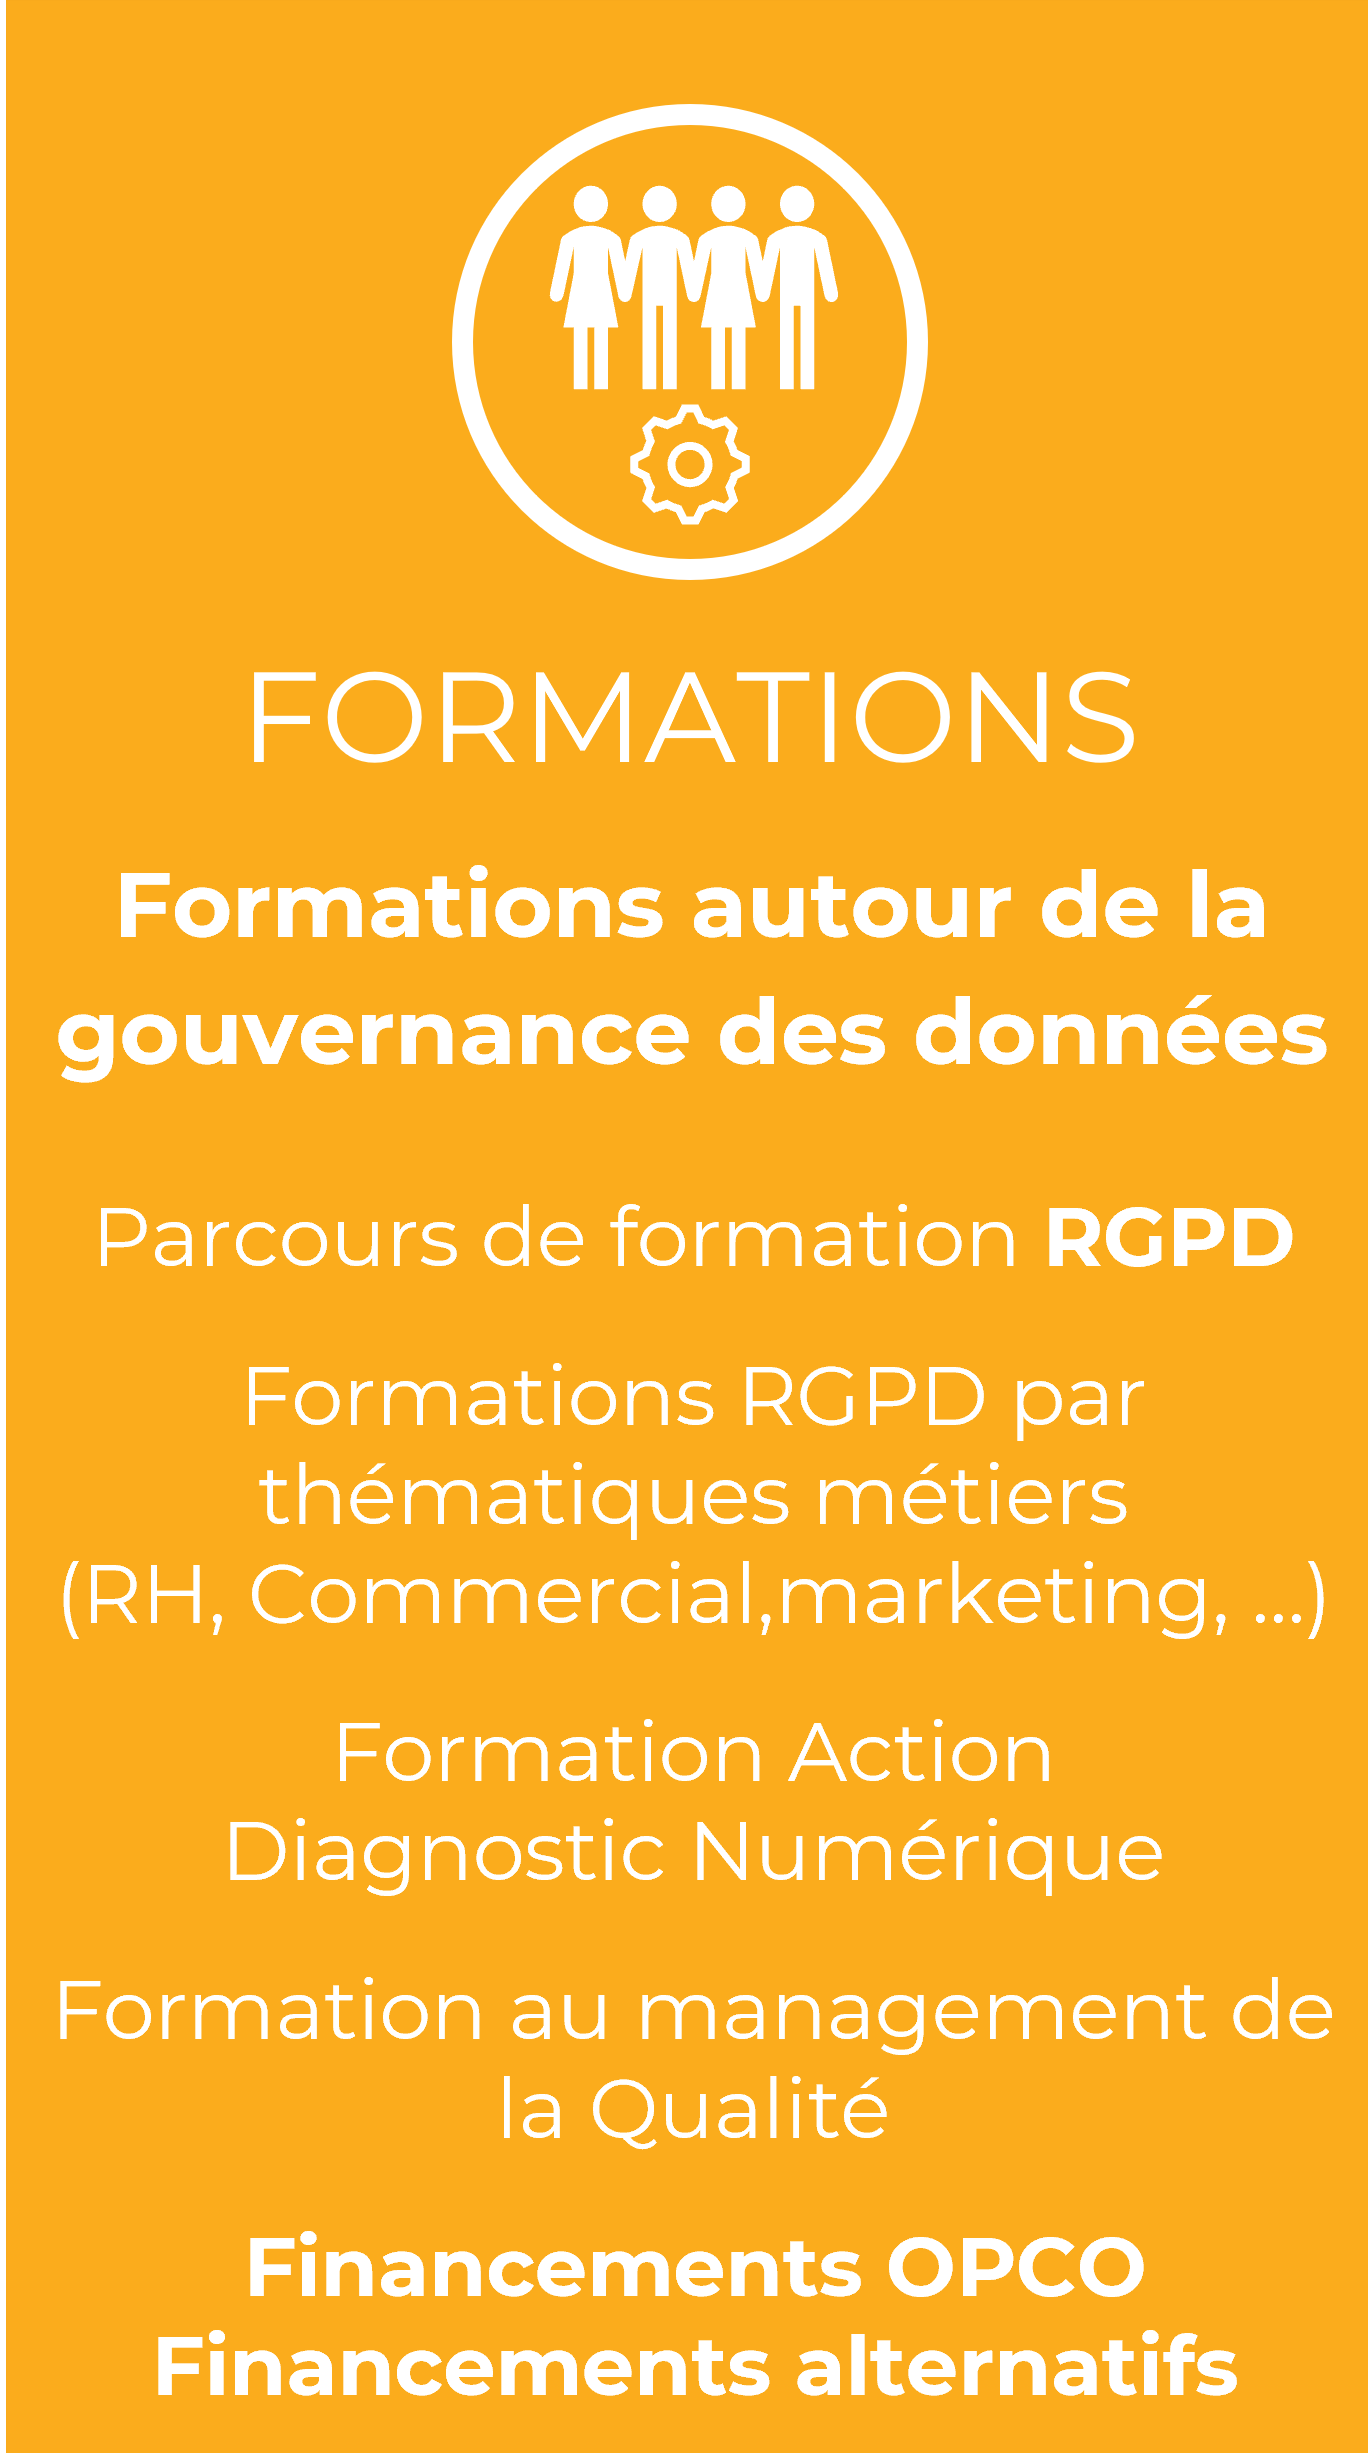 Formations Gouvernance des données, Formations RGPD